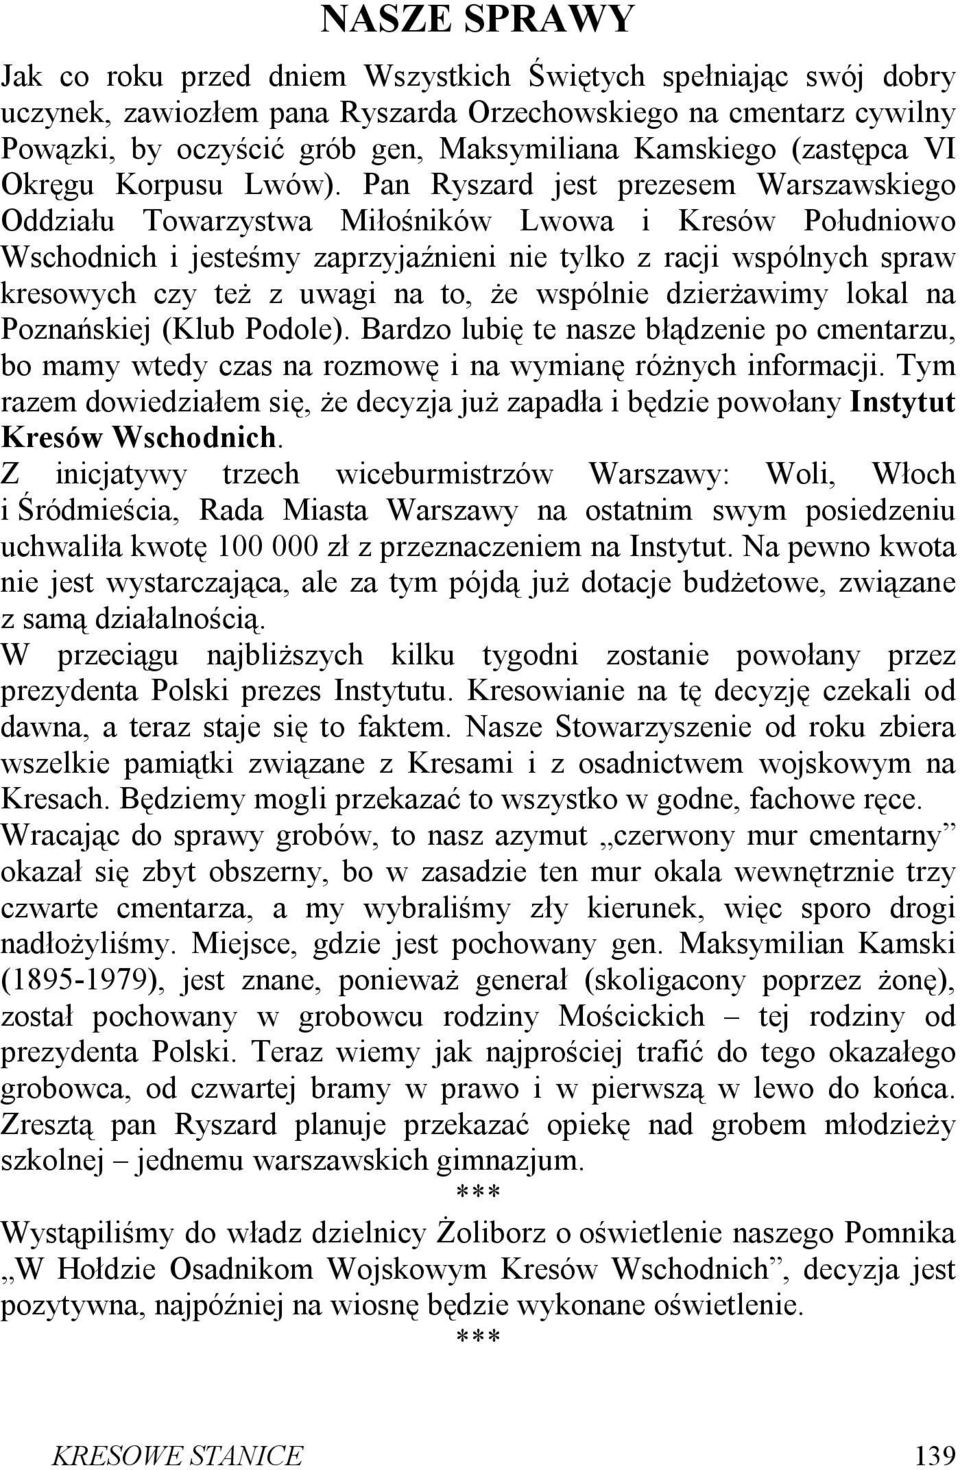 Pan Ryszard jest prezesem Warszawskiego Oddziału Towarzystwa Miłośników Lwowa i Kresów Południowo Wschodnich i jesteśmy zaprzyjaźnieni nie tylko z racji wspólnych spraw kresowych czy też z uwagi na